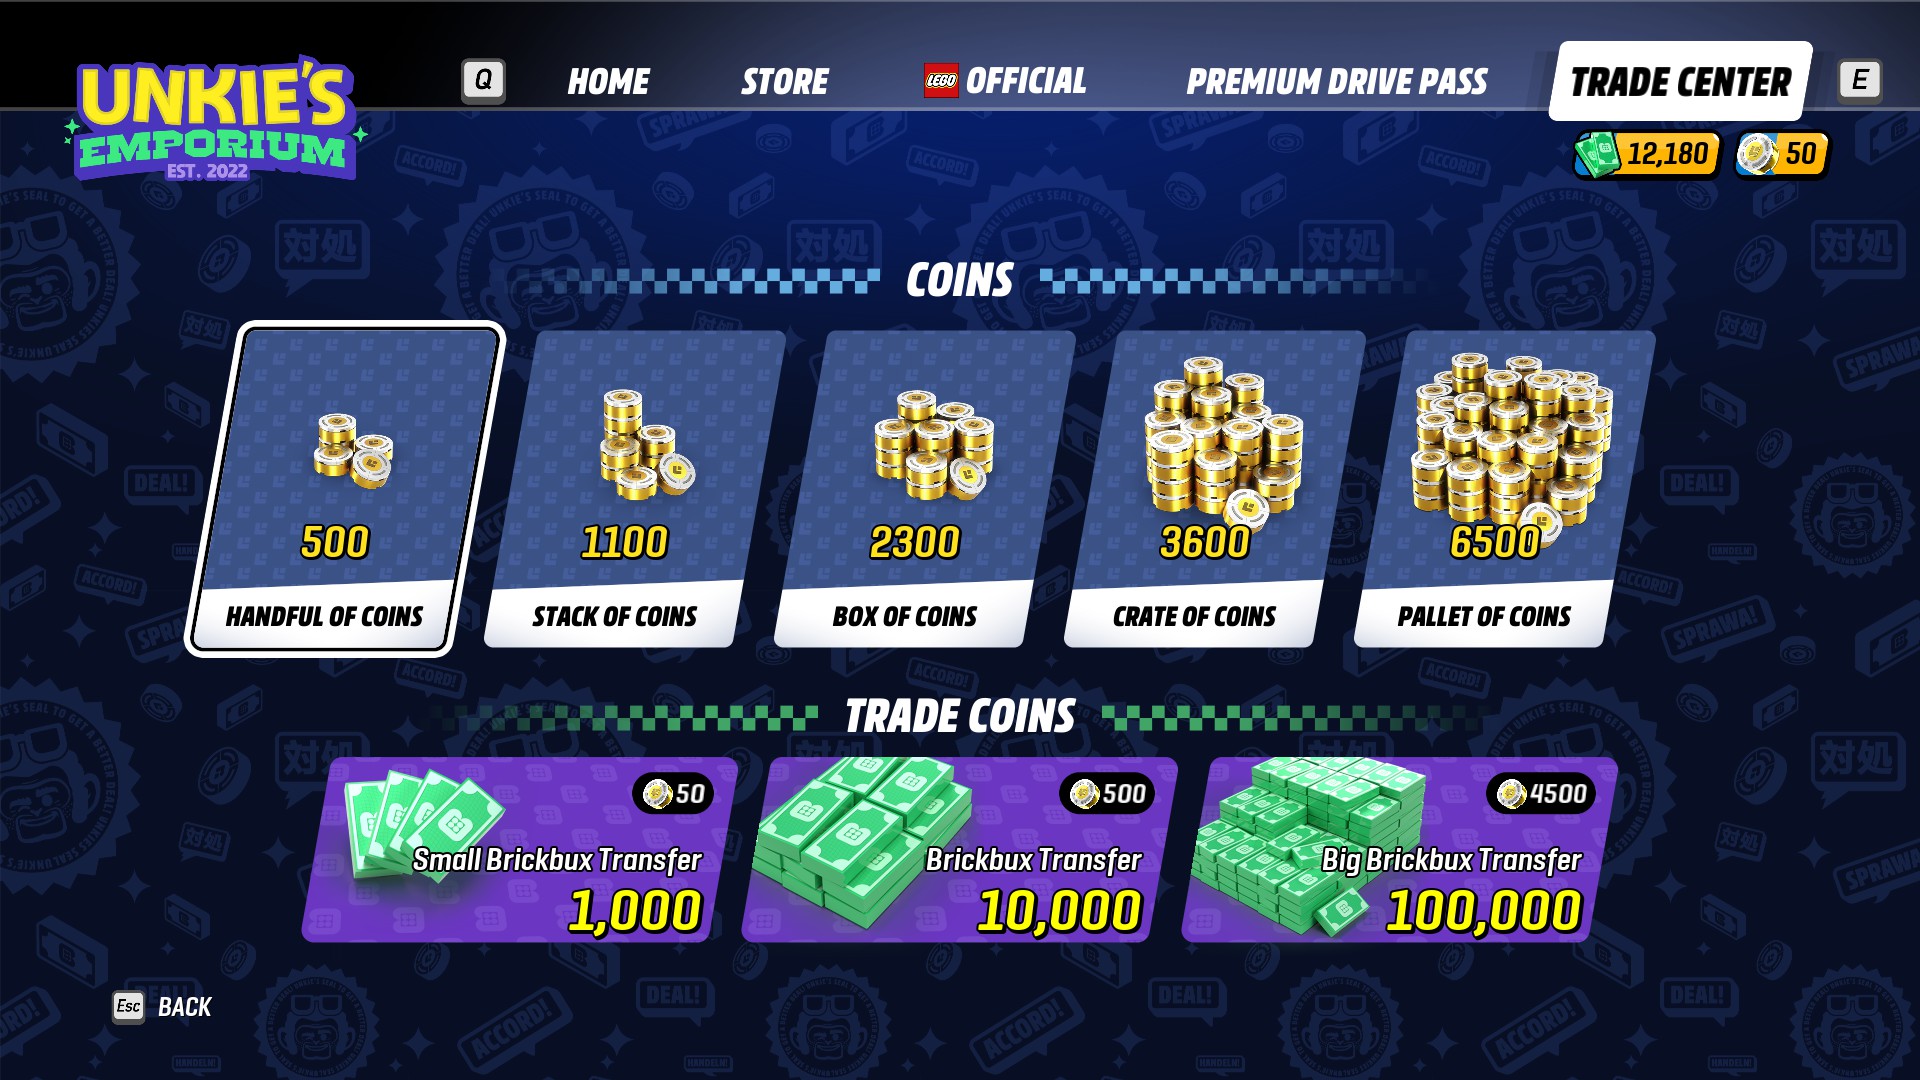 Satılık farklı madeni para destelerini gösteren, Lego 2K Drive'ın oyun içi nakit dükkanının bir sayfası.